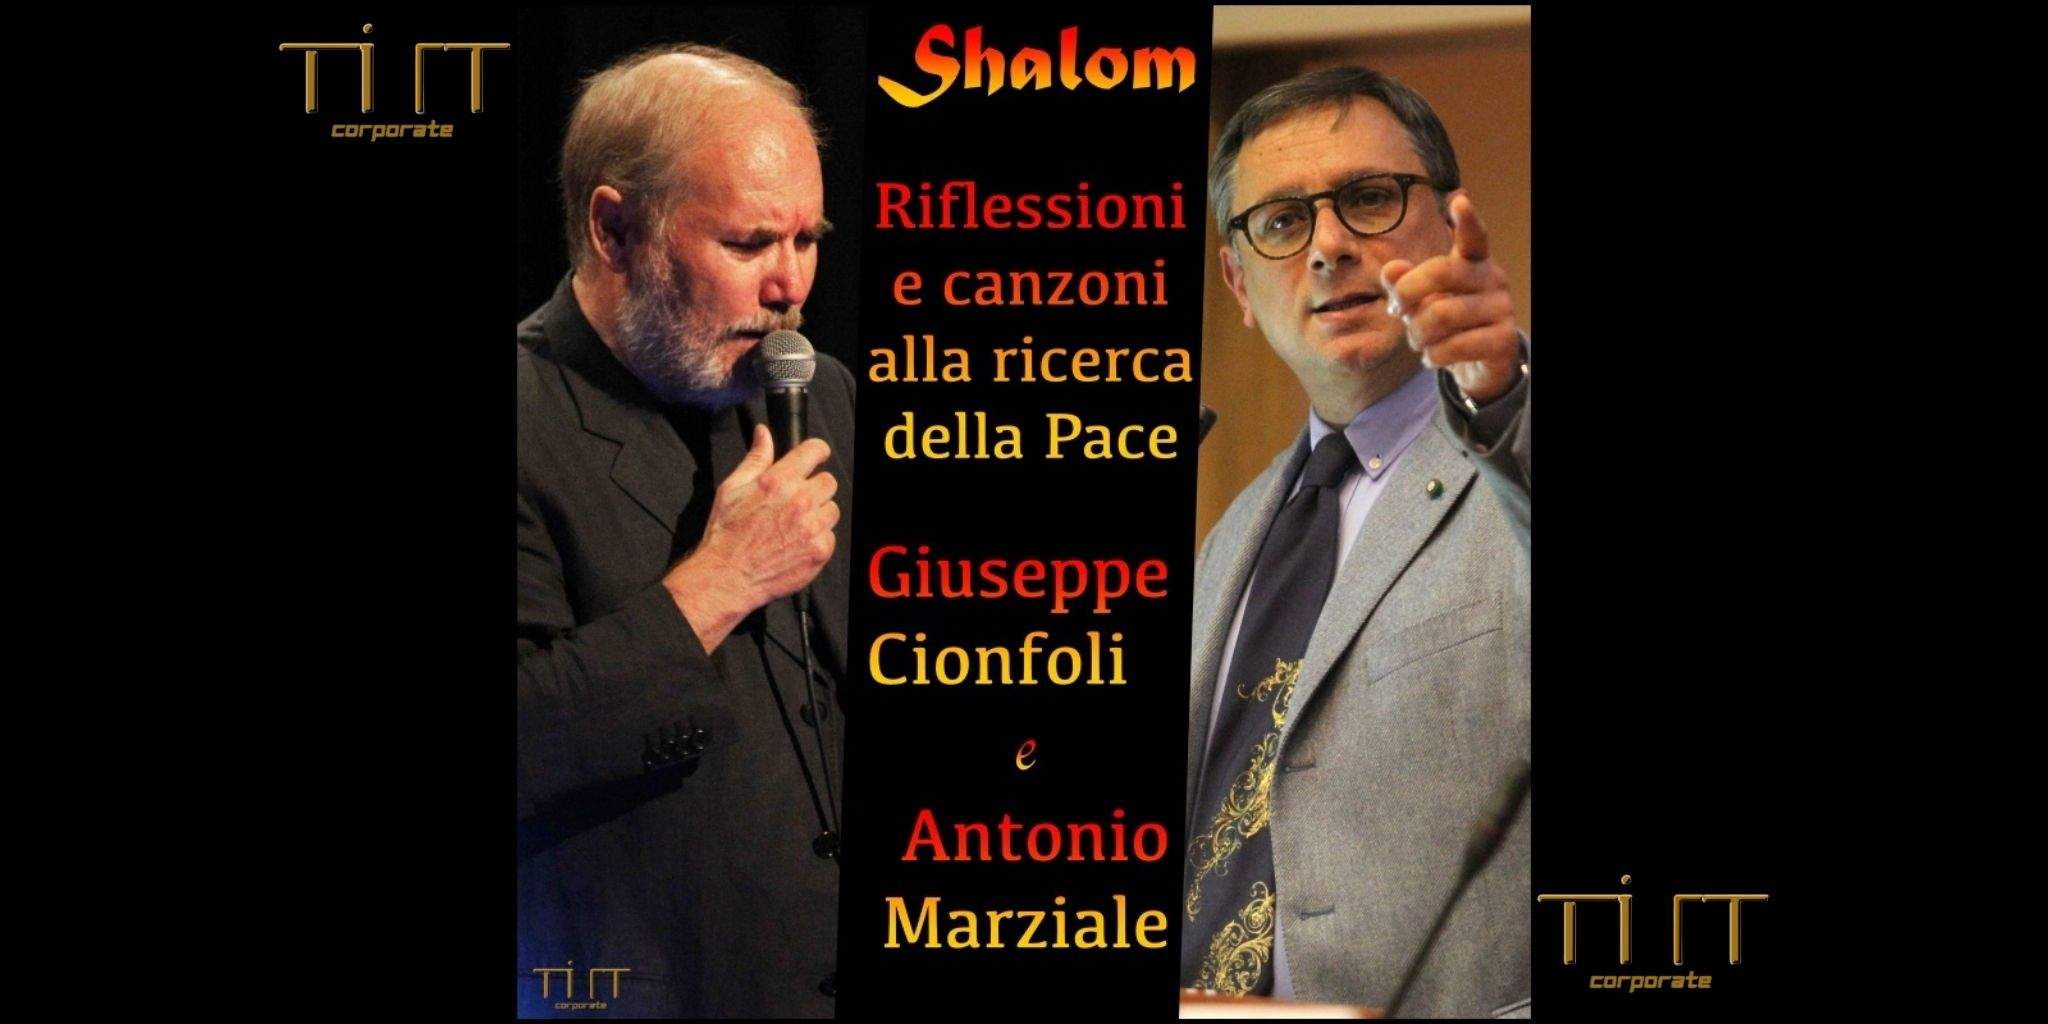 SHALOM: Riflessioni e canzoni alla ricerca della Pace con Giuseppe Cionfoli ed Antonio Marziale